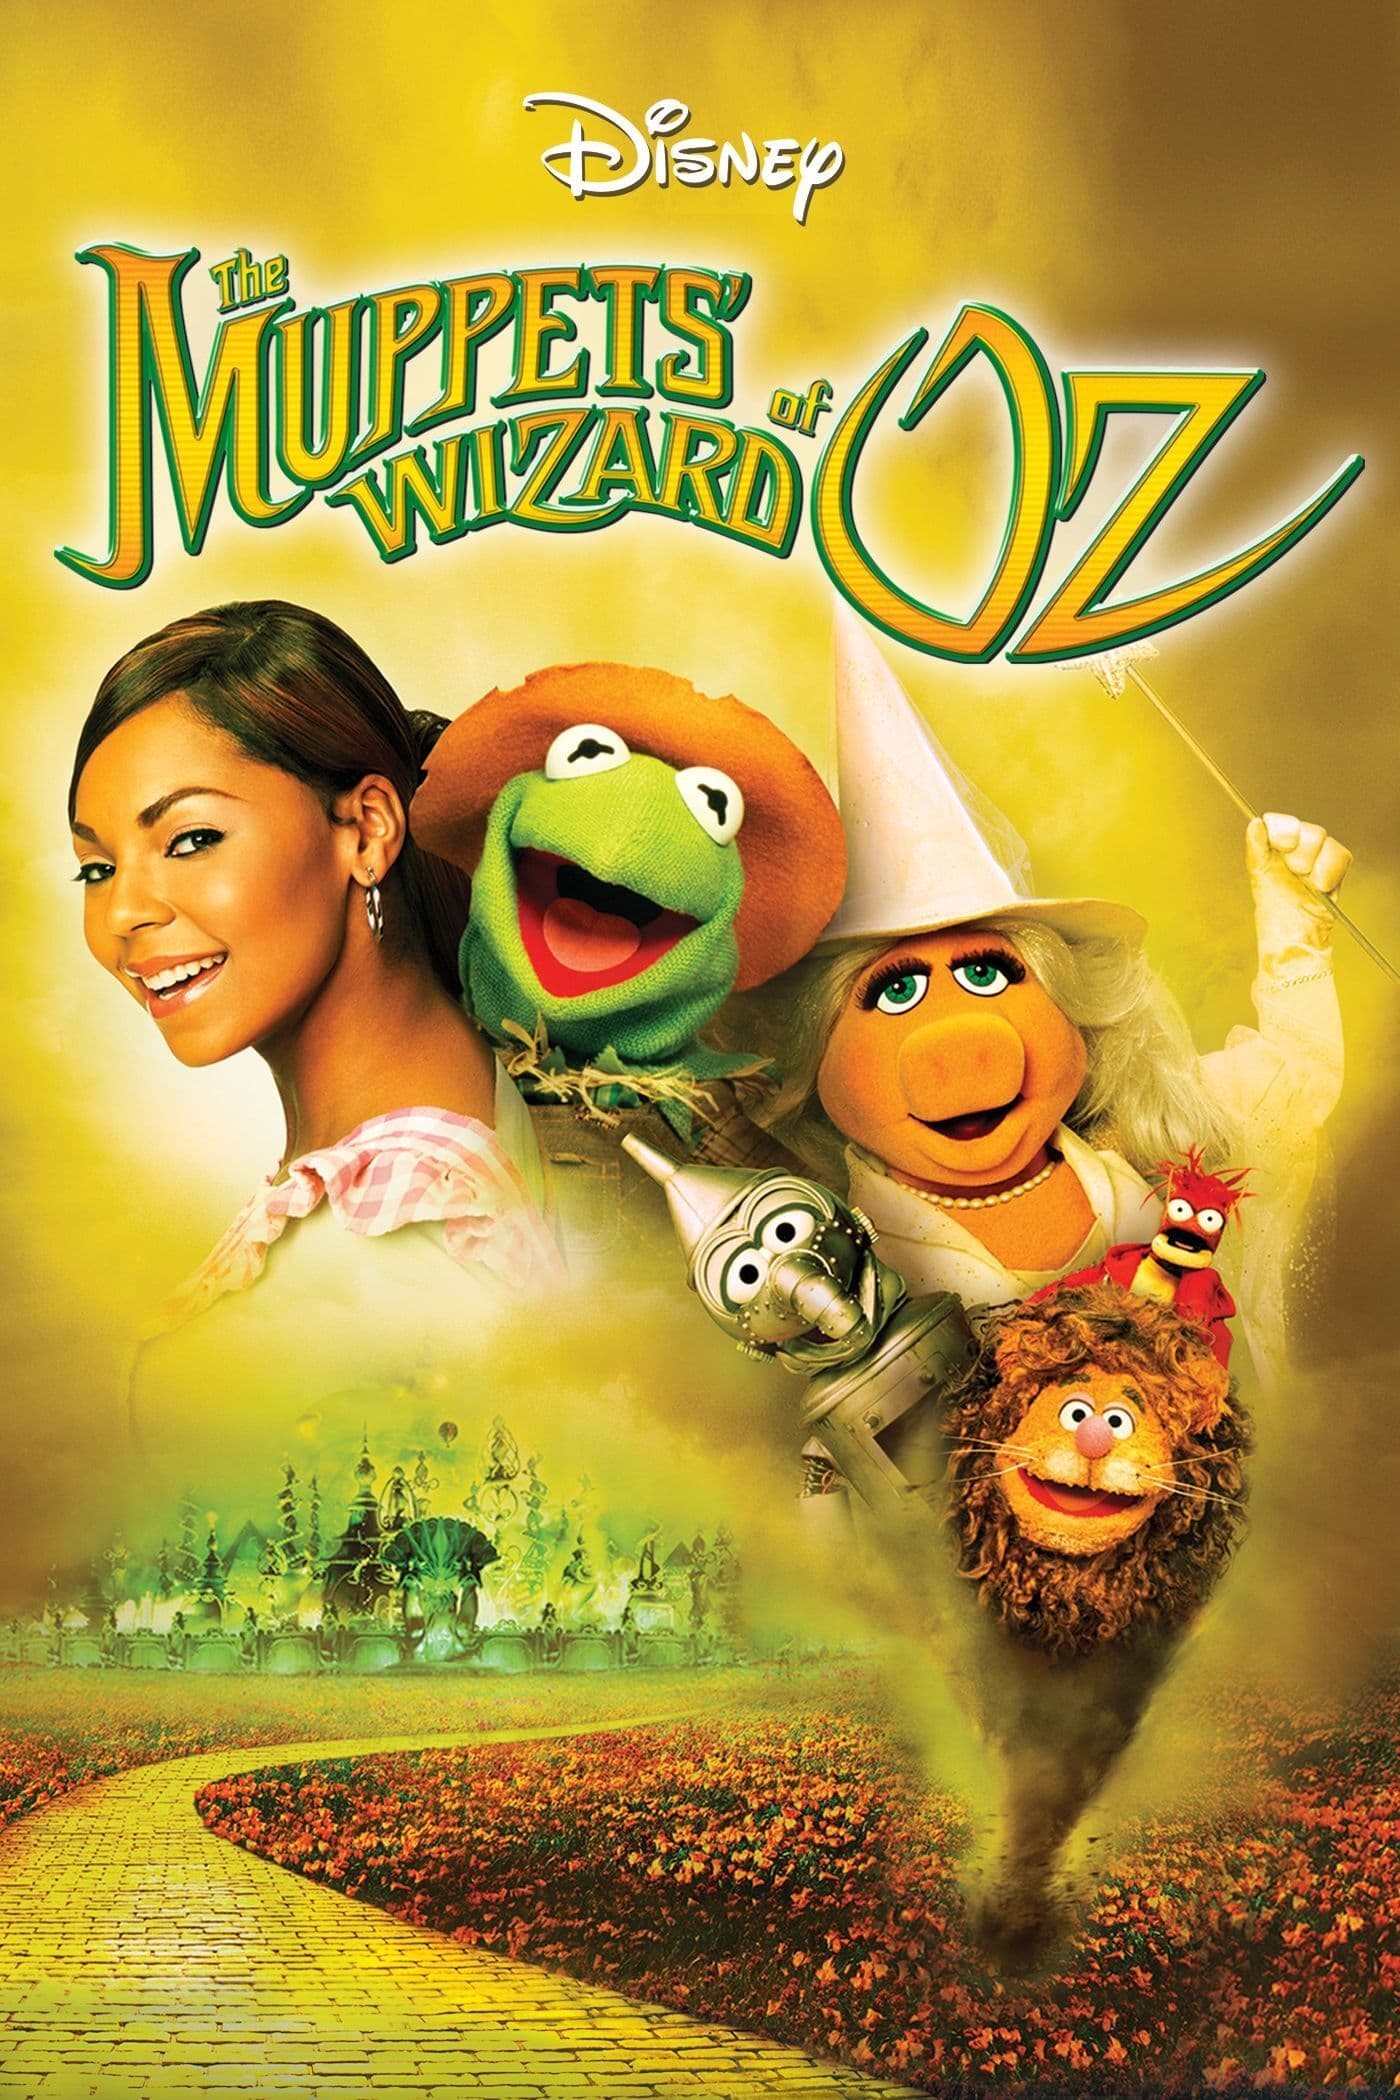 Os Muppets e o Mágico de Oz